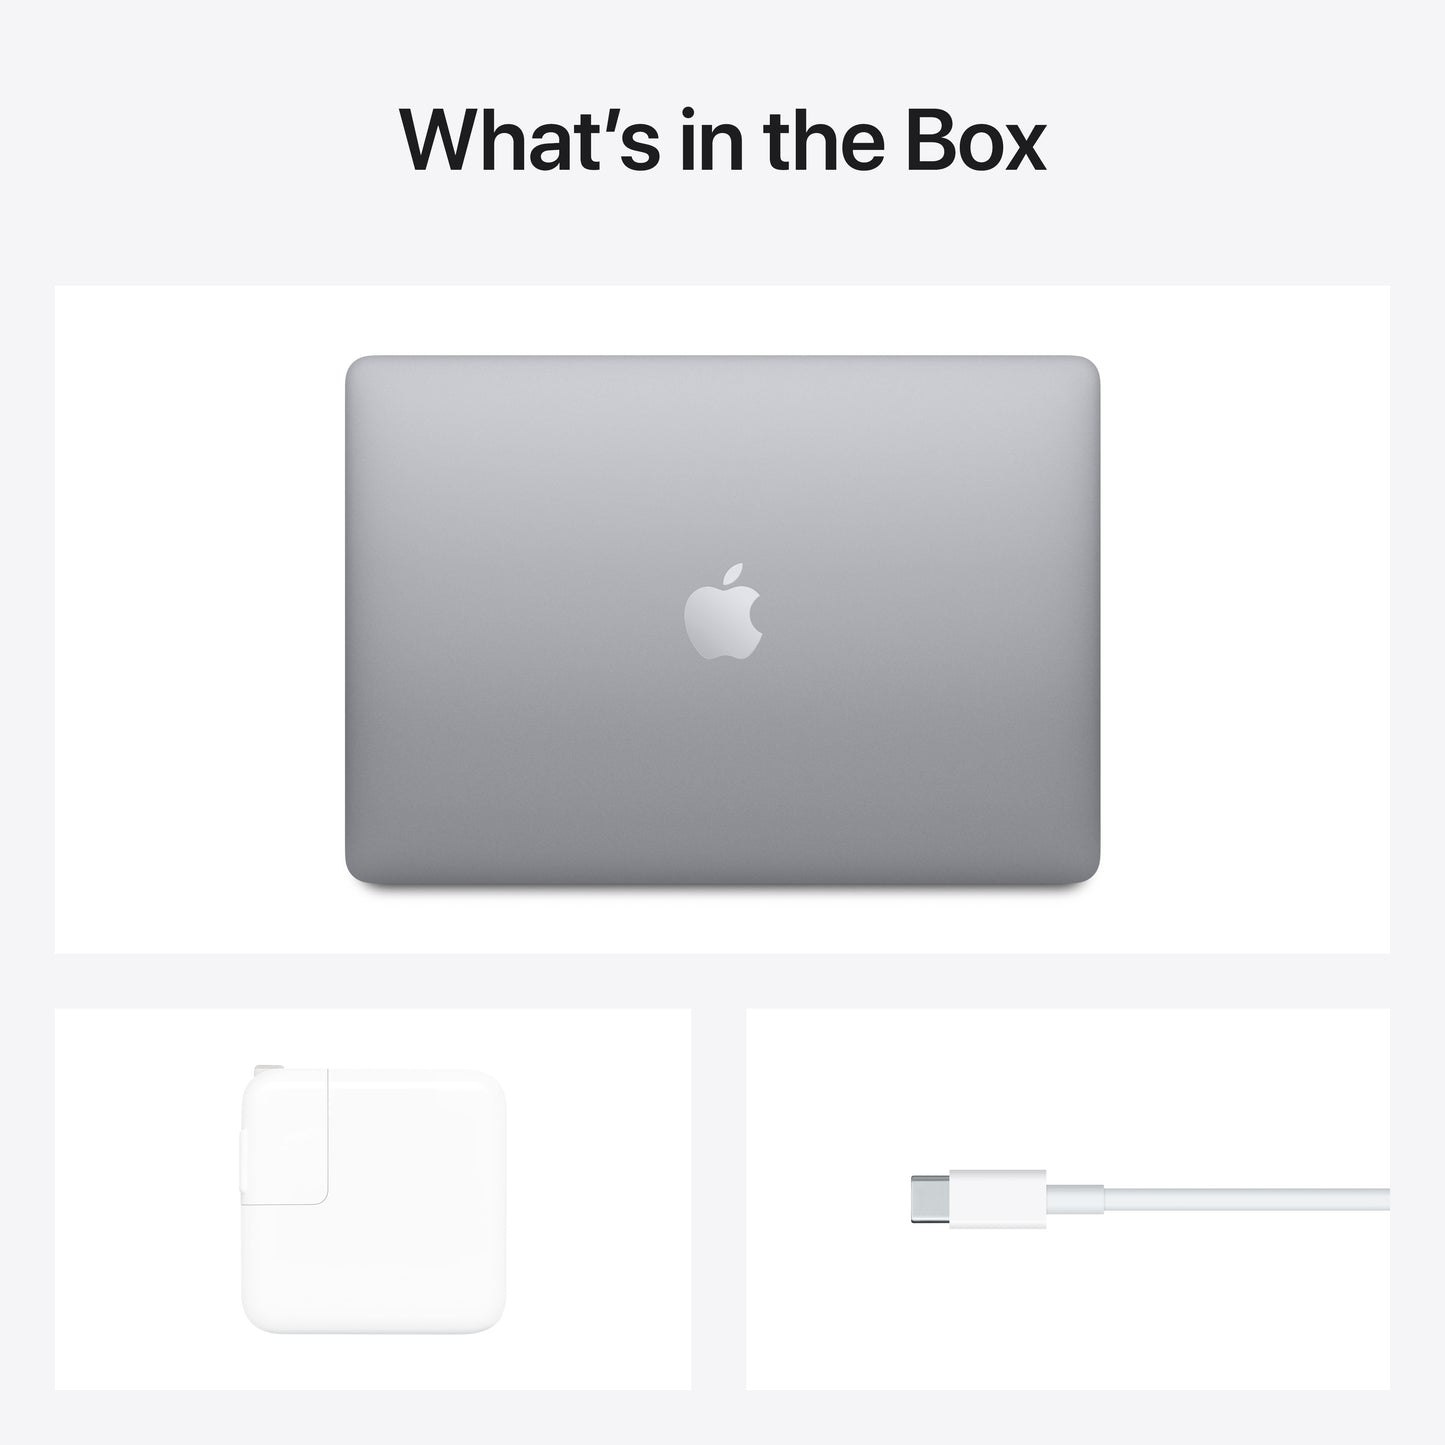 [OPEN BOX] EOL MacBook Air 13 pouces: Puce Apple M1 avec CPU 8 cœurs et GPU 7 cœurs, 8 Go, 256 Go - Gris sidéral (Azerty FR)